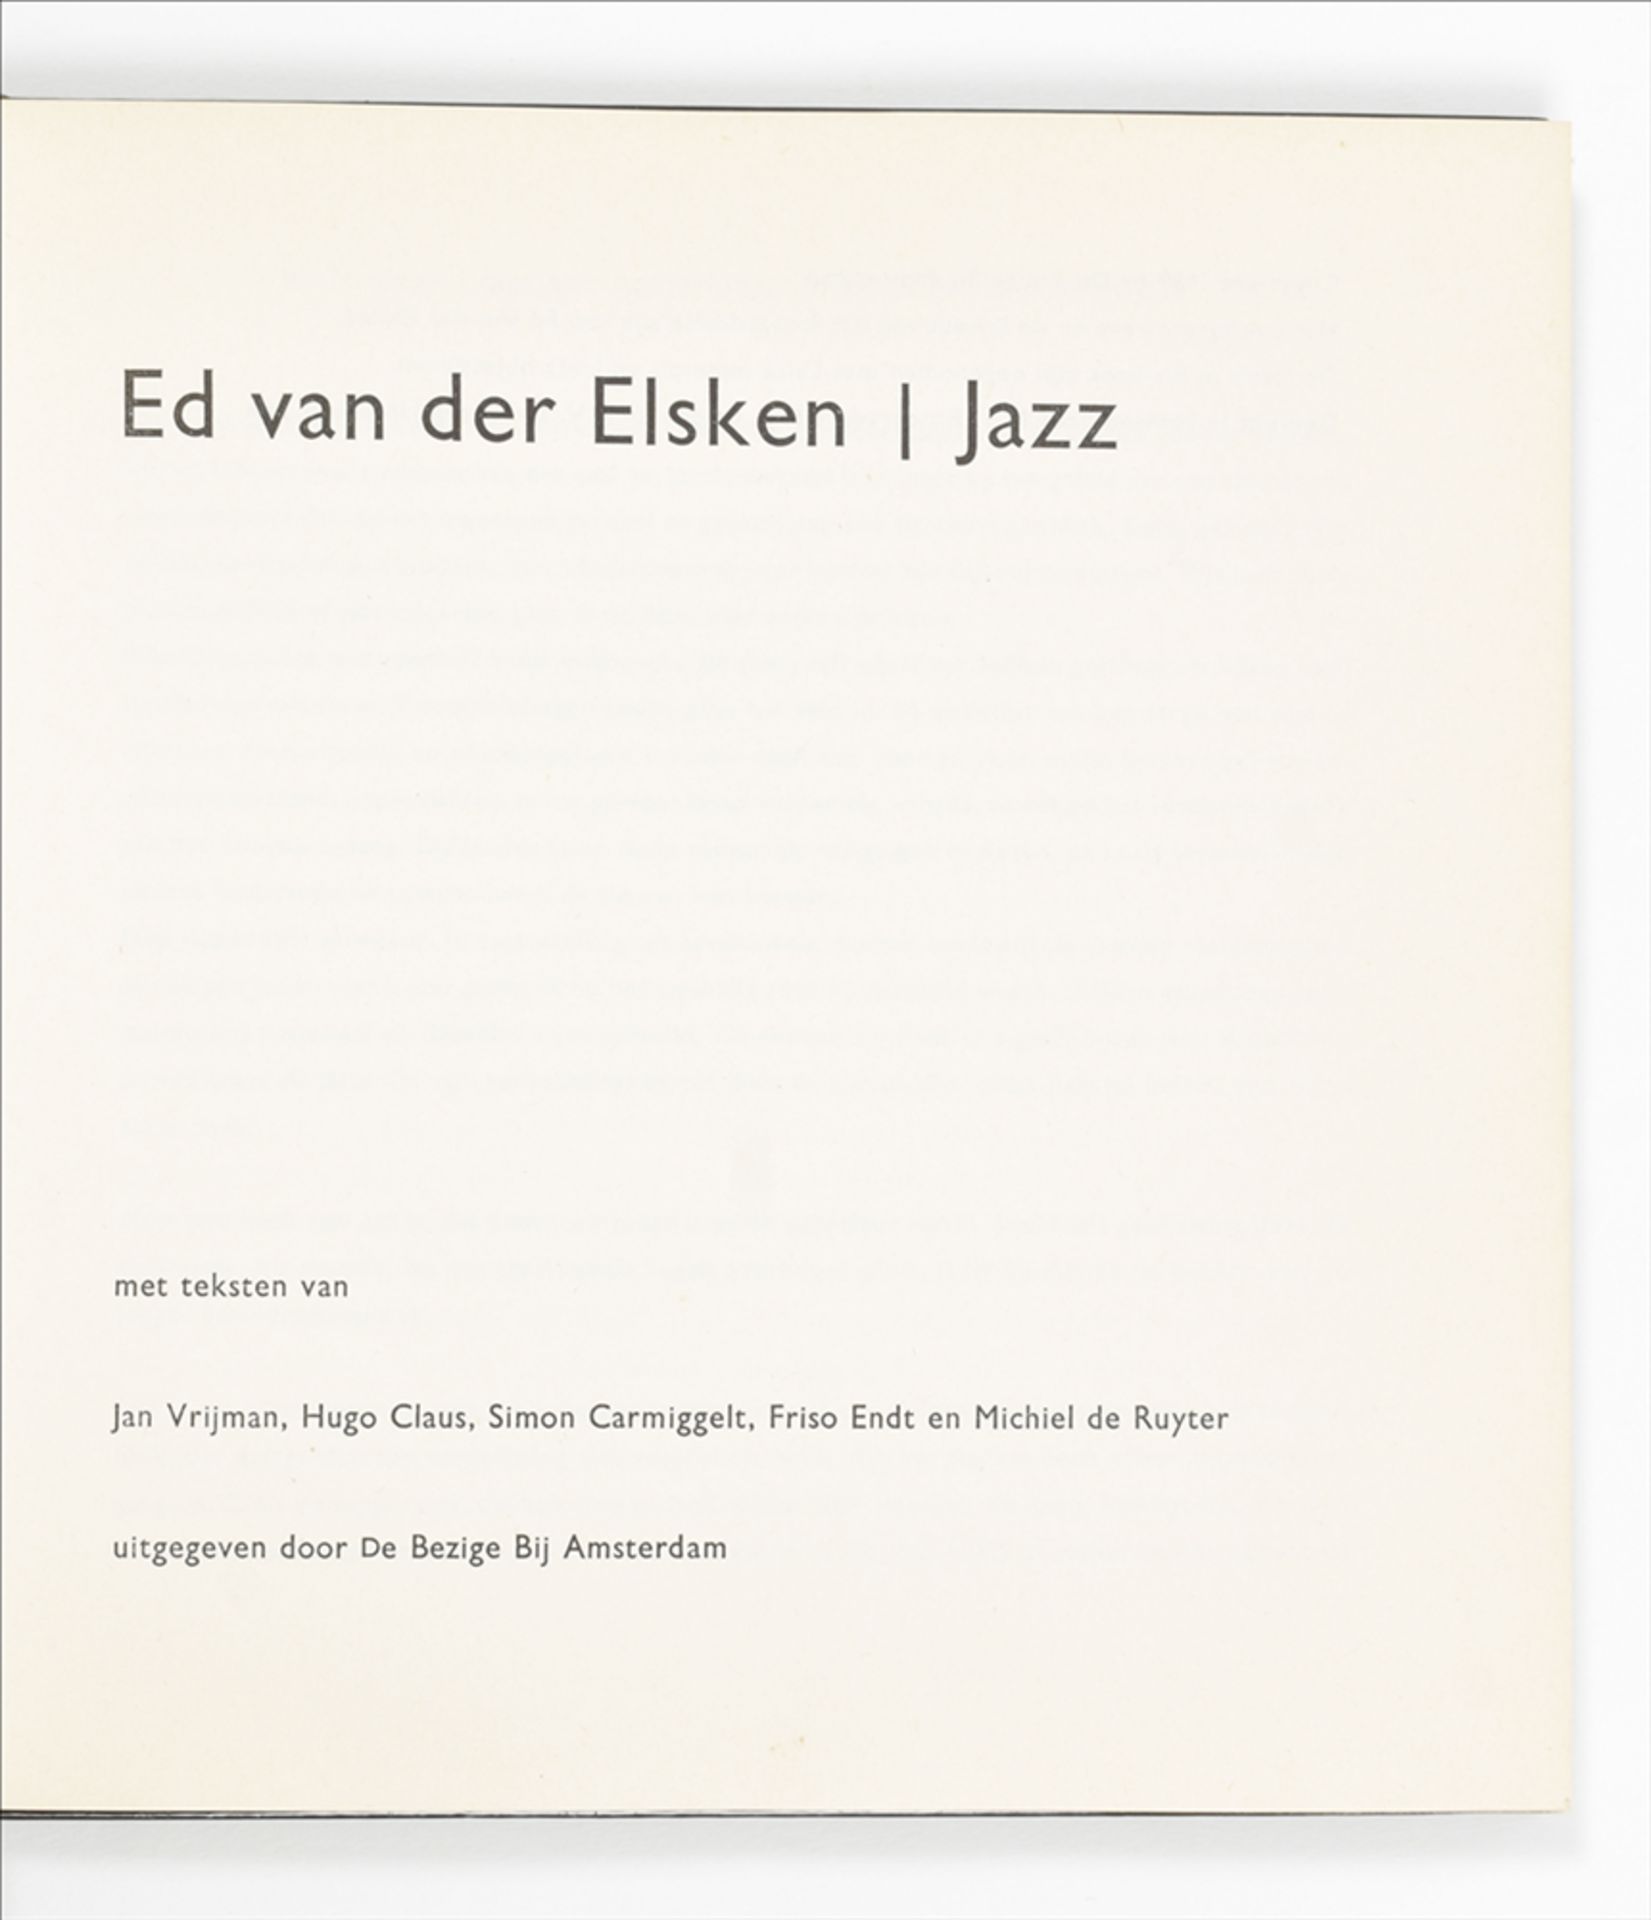 Ed van der Elsken. Six works: (1) Hong Kong - Image 4 of 10